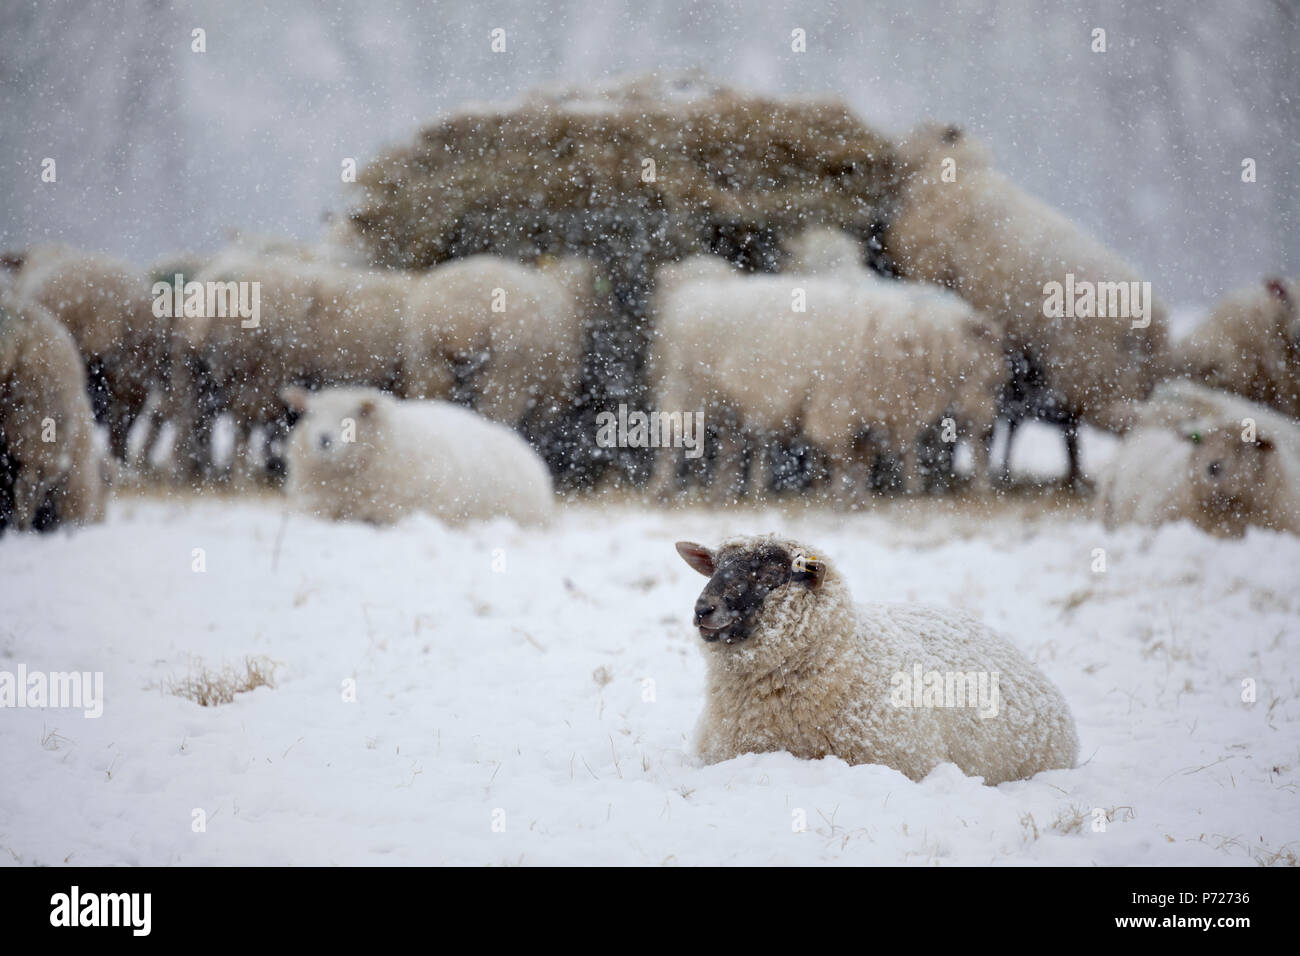 Moutons blancs couverts de neige couché dans la neige et les moutons de manger du foin, Burwash, East Sussex, Angleterre, Royaume-Uni, Europe Banque D'Images